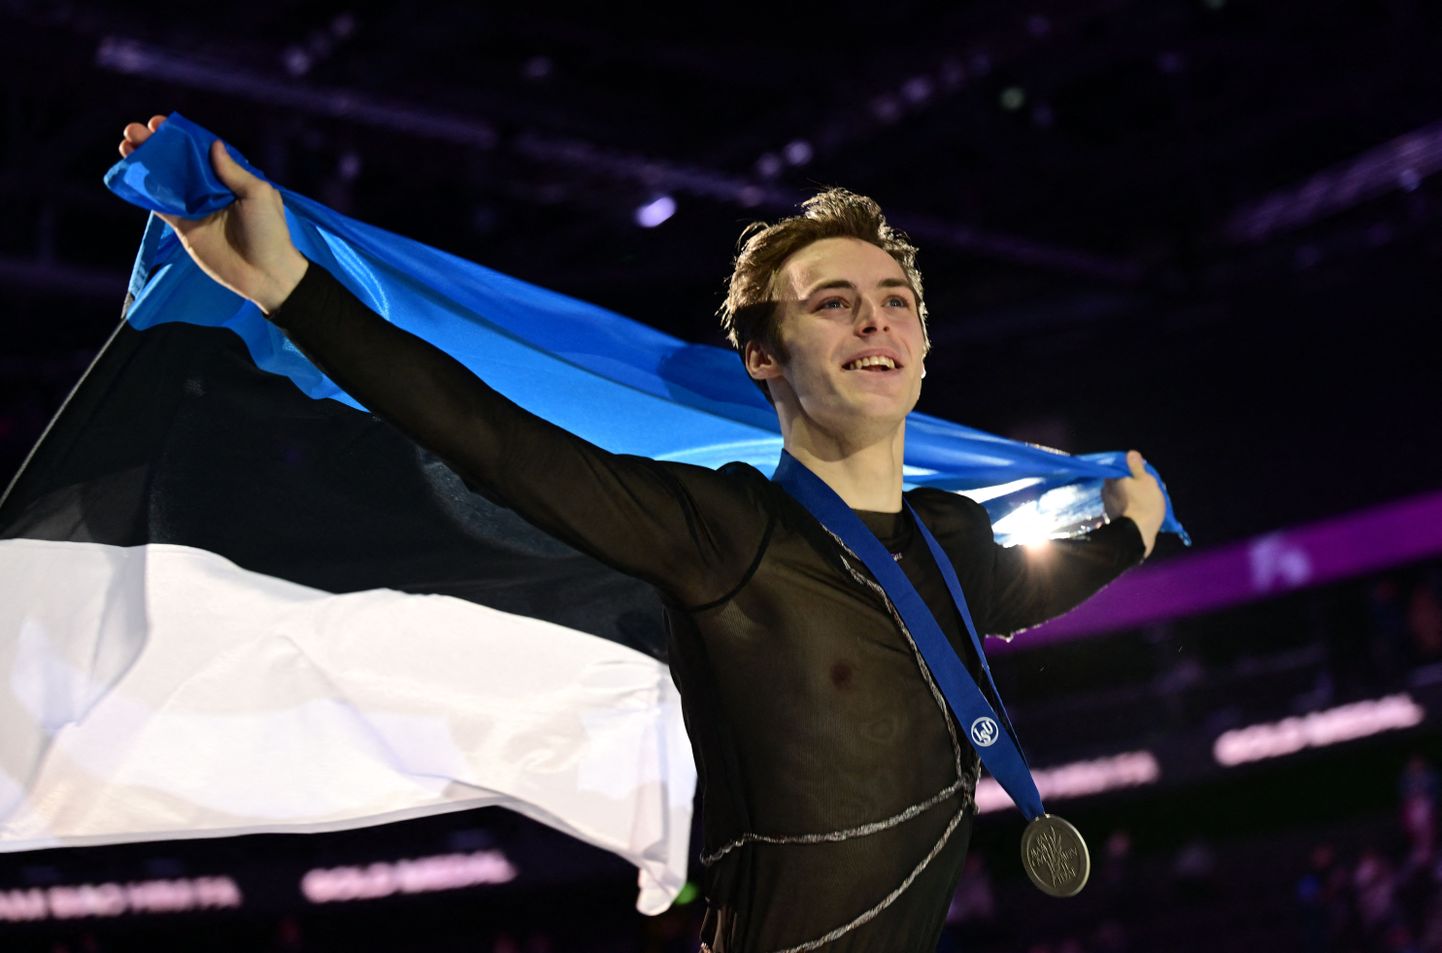 Александр Селевко в этом году стал серебряным призером чемпионата Европы по фигурному катанию.